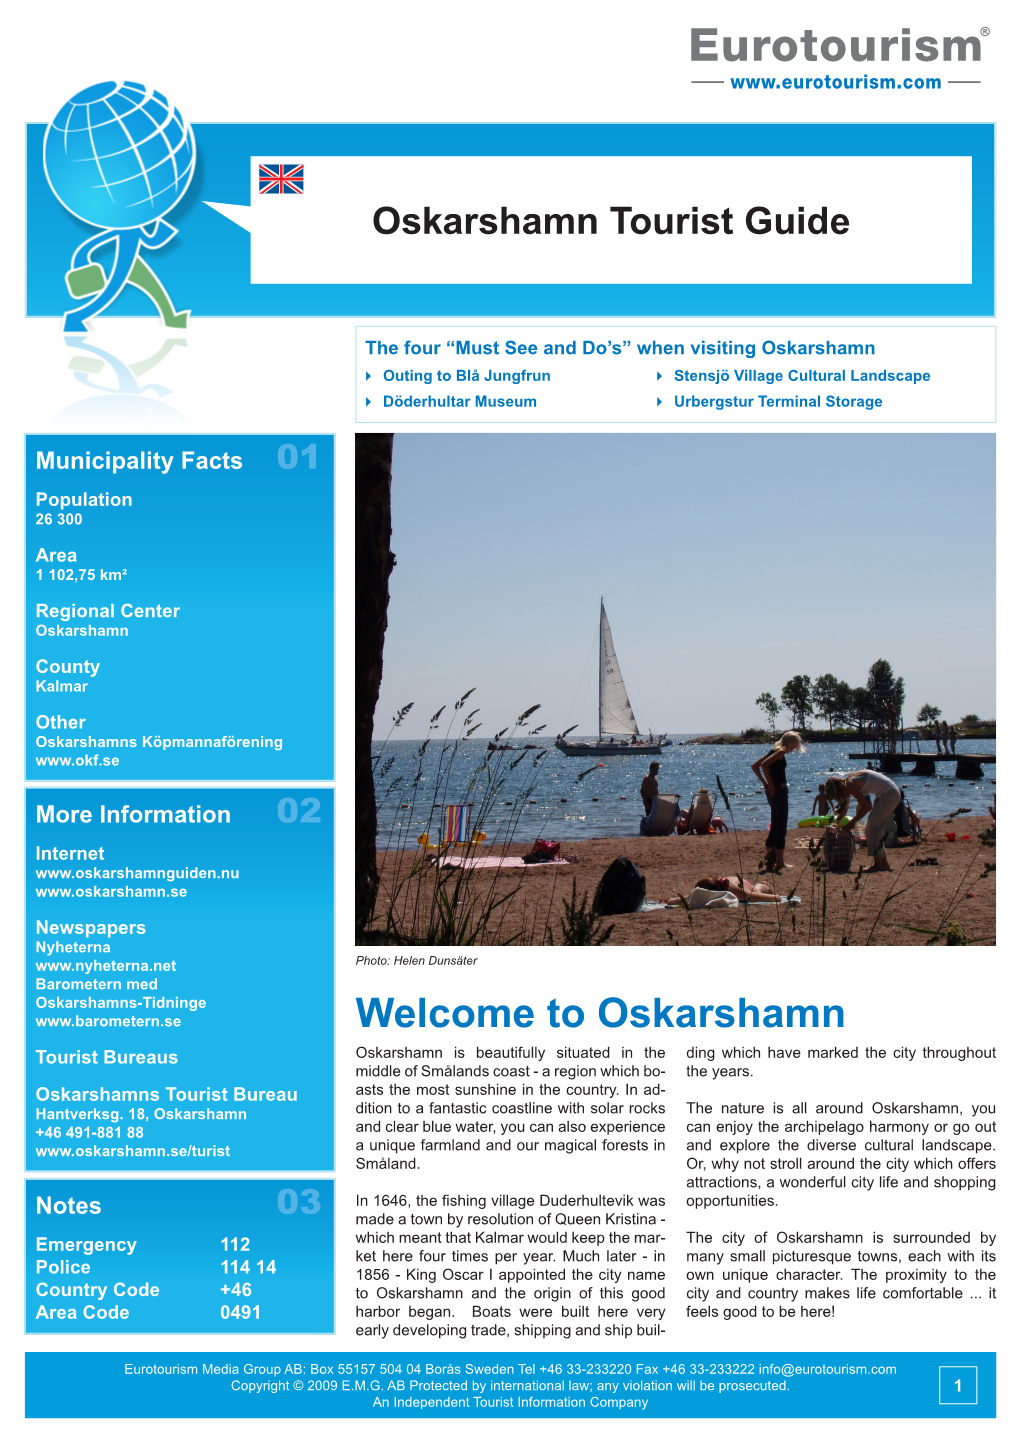 Oskarshamn Tourist Guide